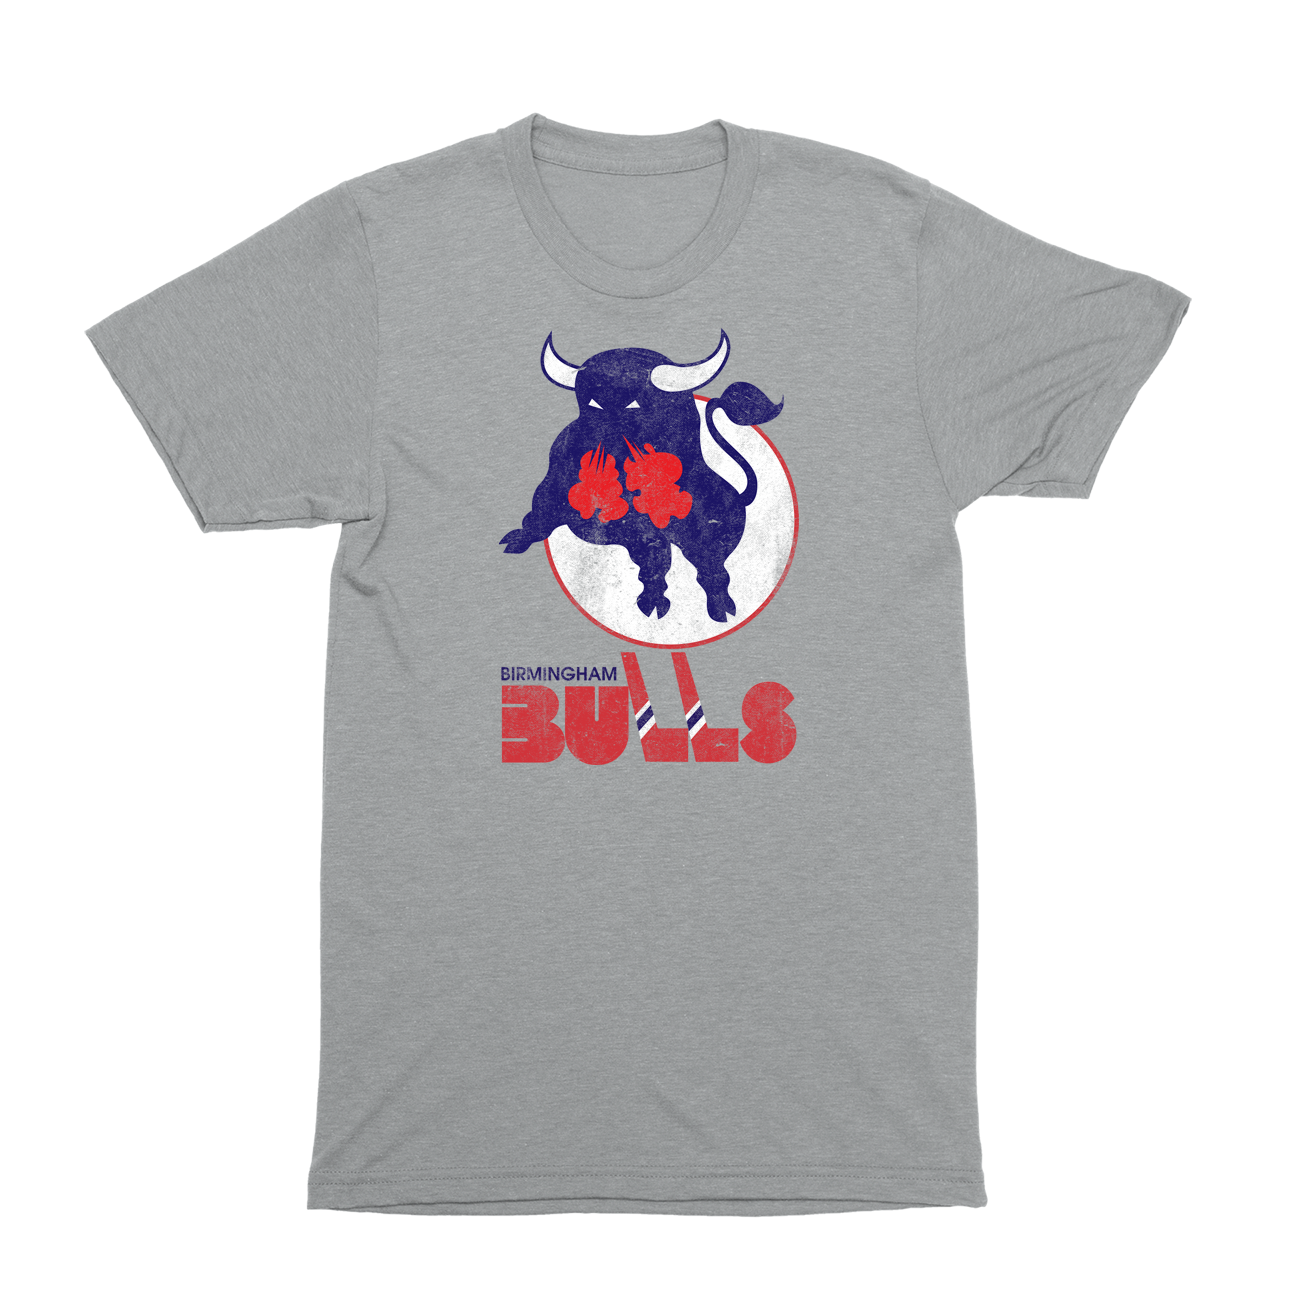 Birmingham Bulls T-Shirt